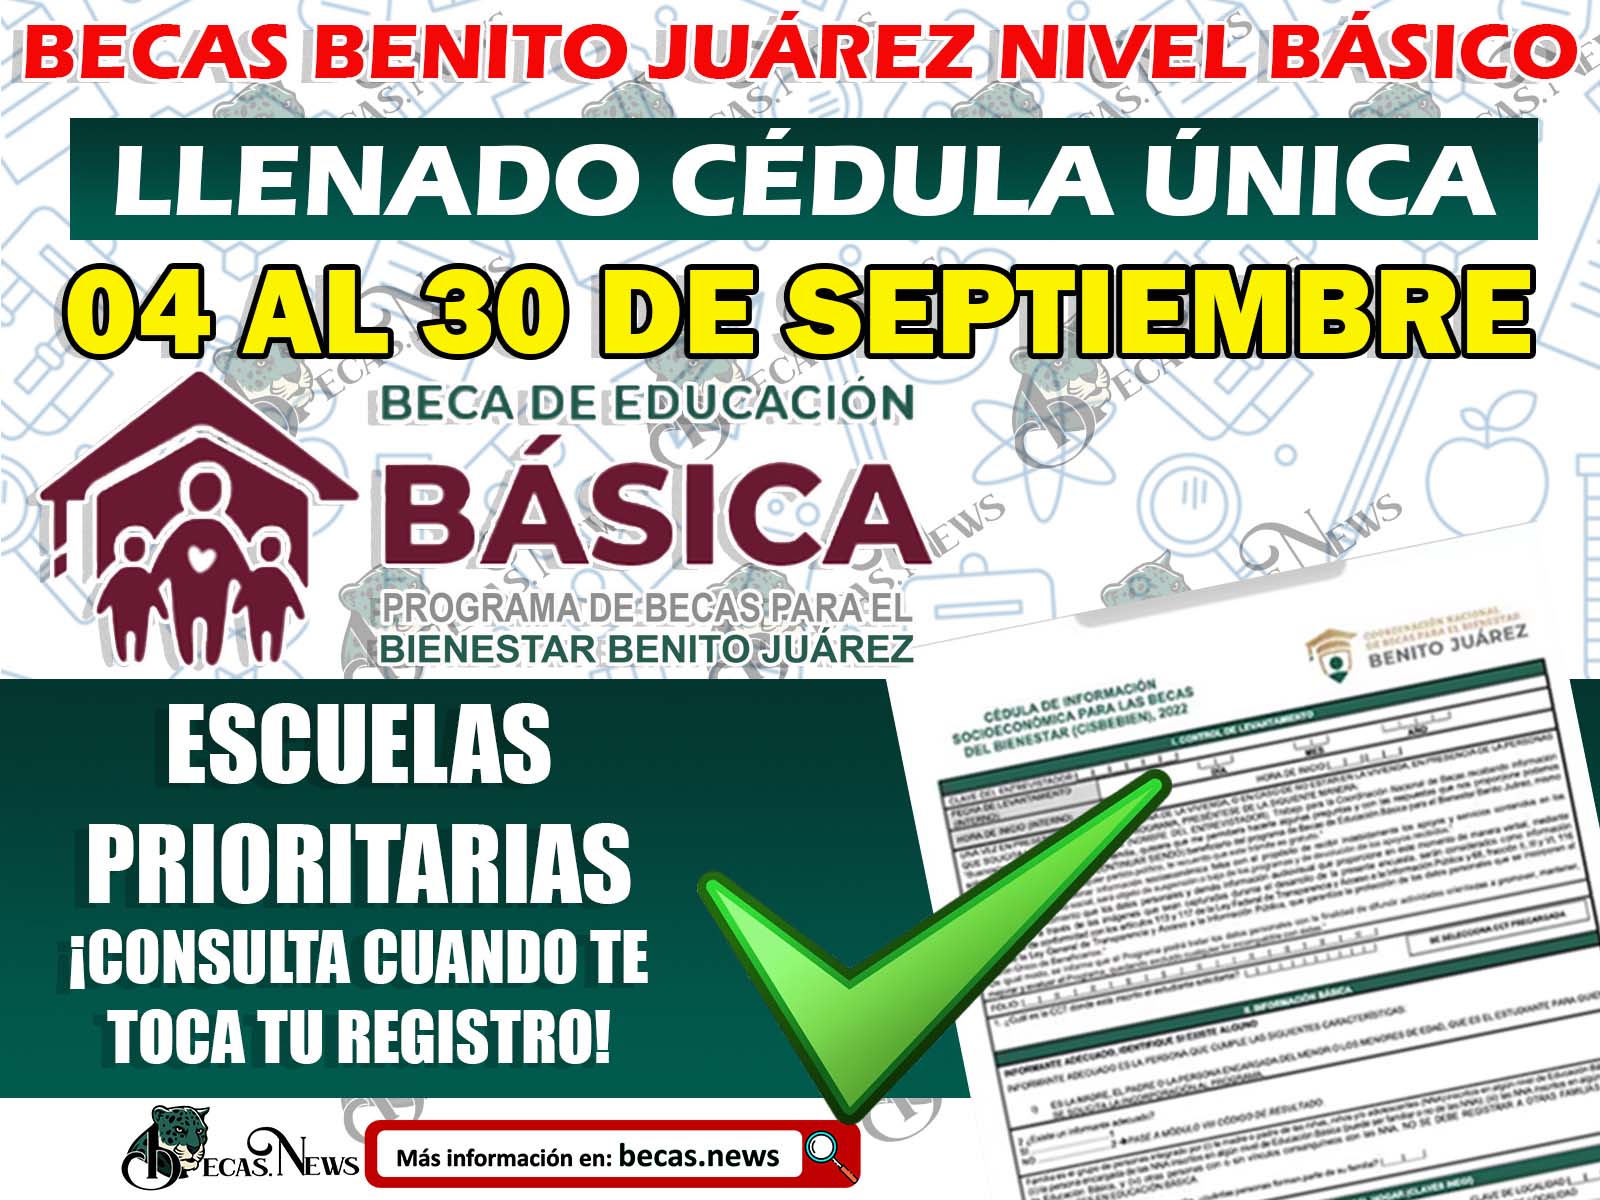 ¡¡Aviso Importante!! Fechas Oficiales Registro Becas Benito Juárez Nivel Básico: Aplicación Cédula Única